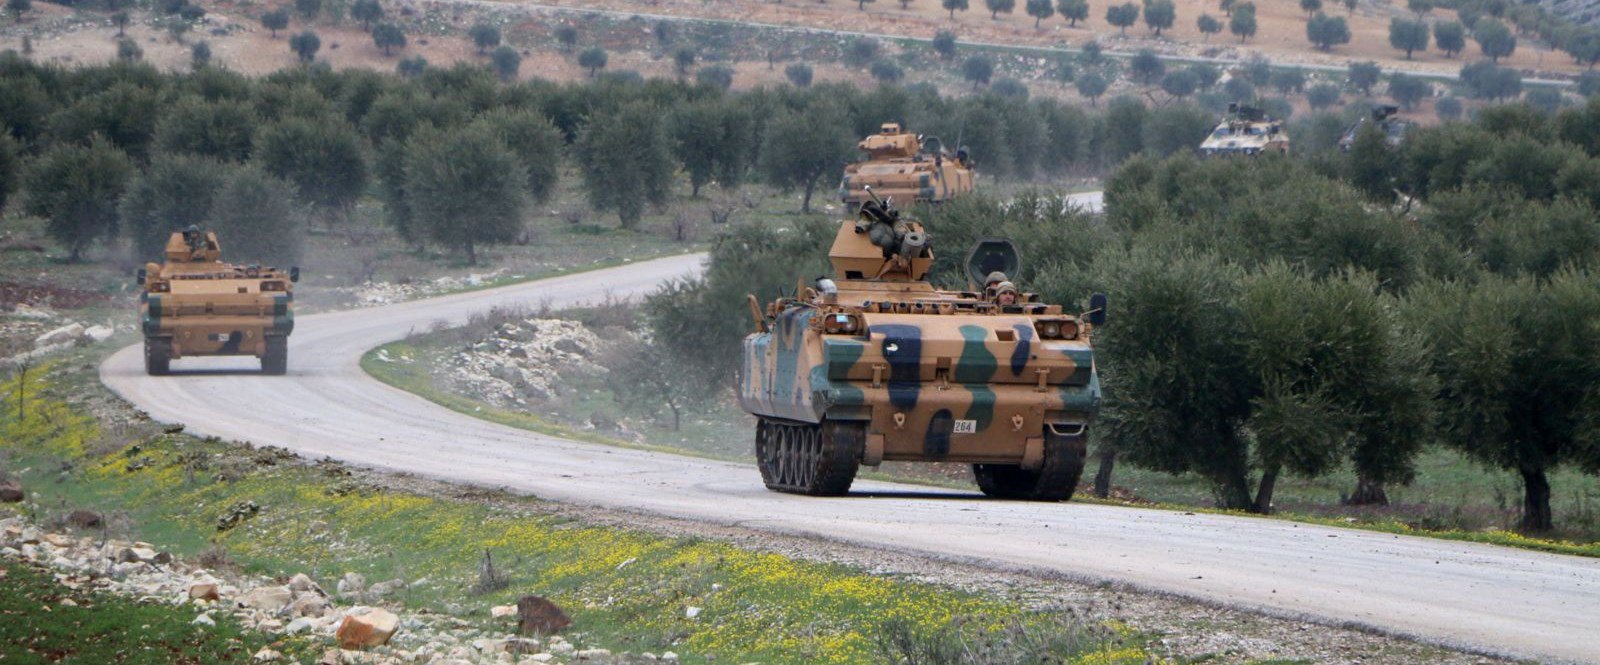 لبقاء القوات التركية شمالي سوريا هنالك ثلاثة محددات رئيسية تعرف عليها!!